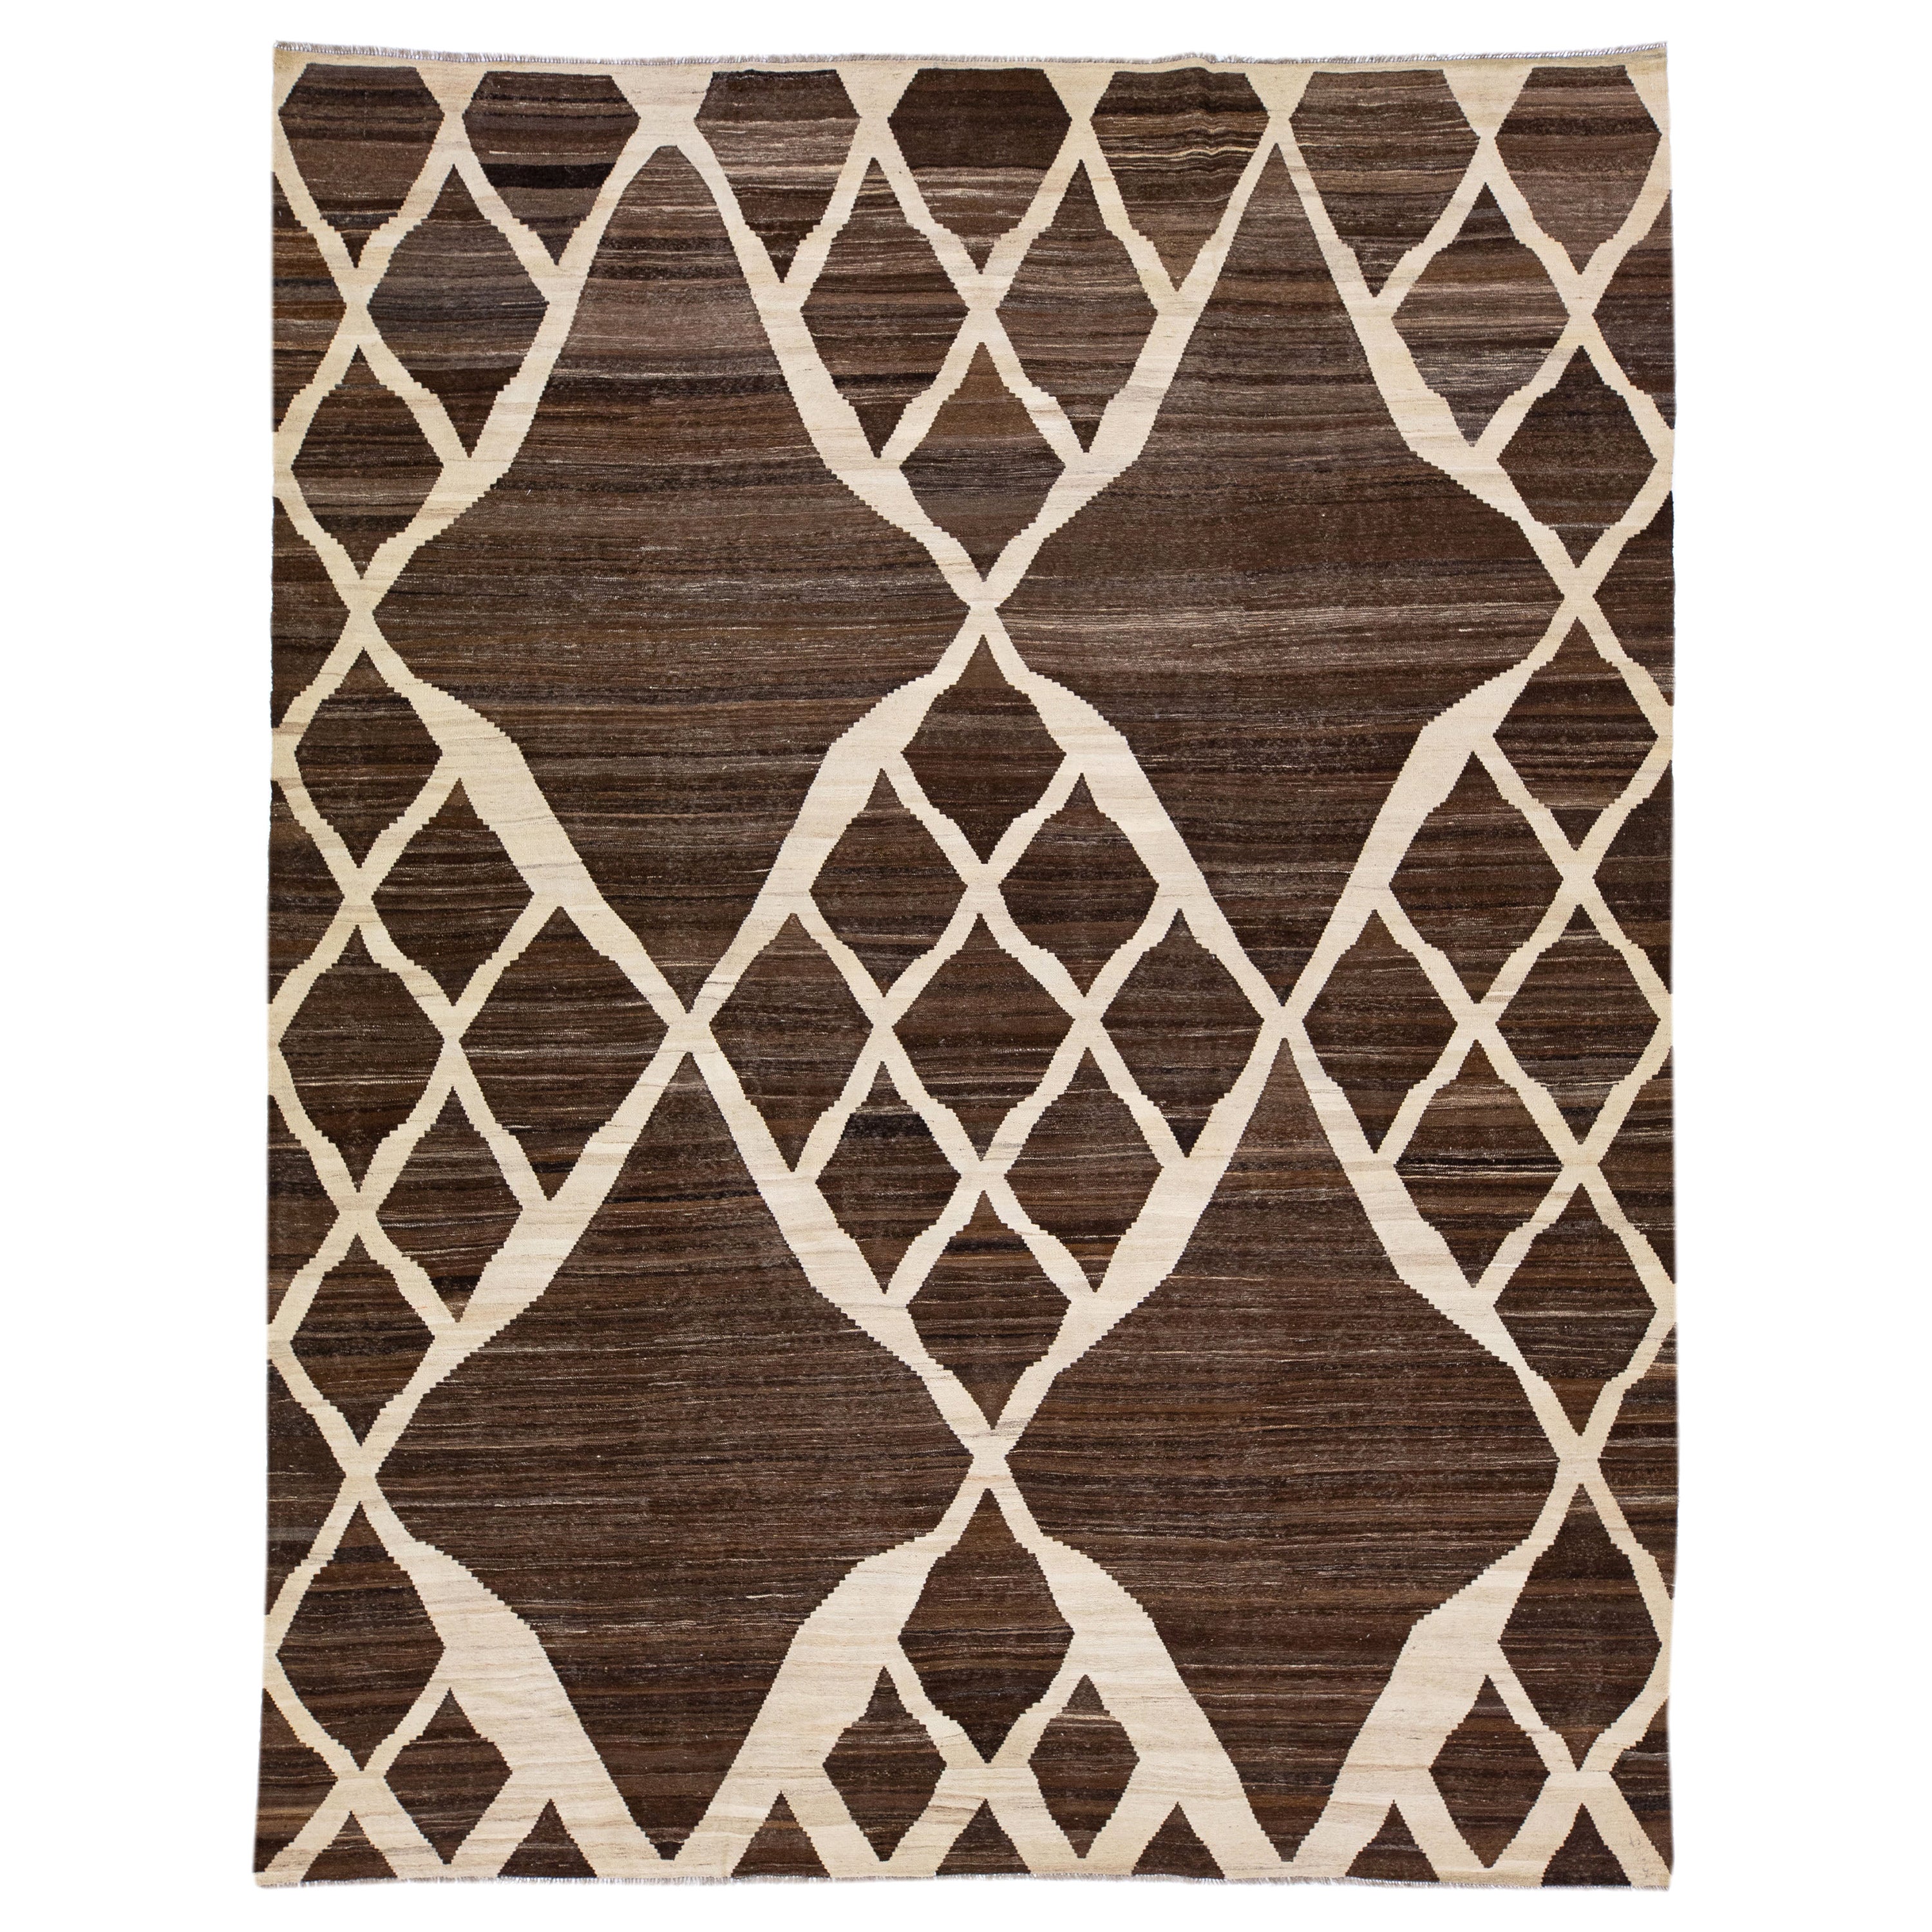 Tapis Kilim moderne marron en laine tissée à plat avec motif géométrique